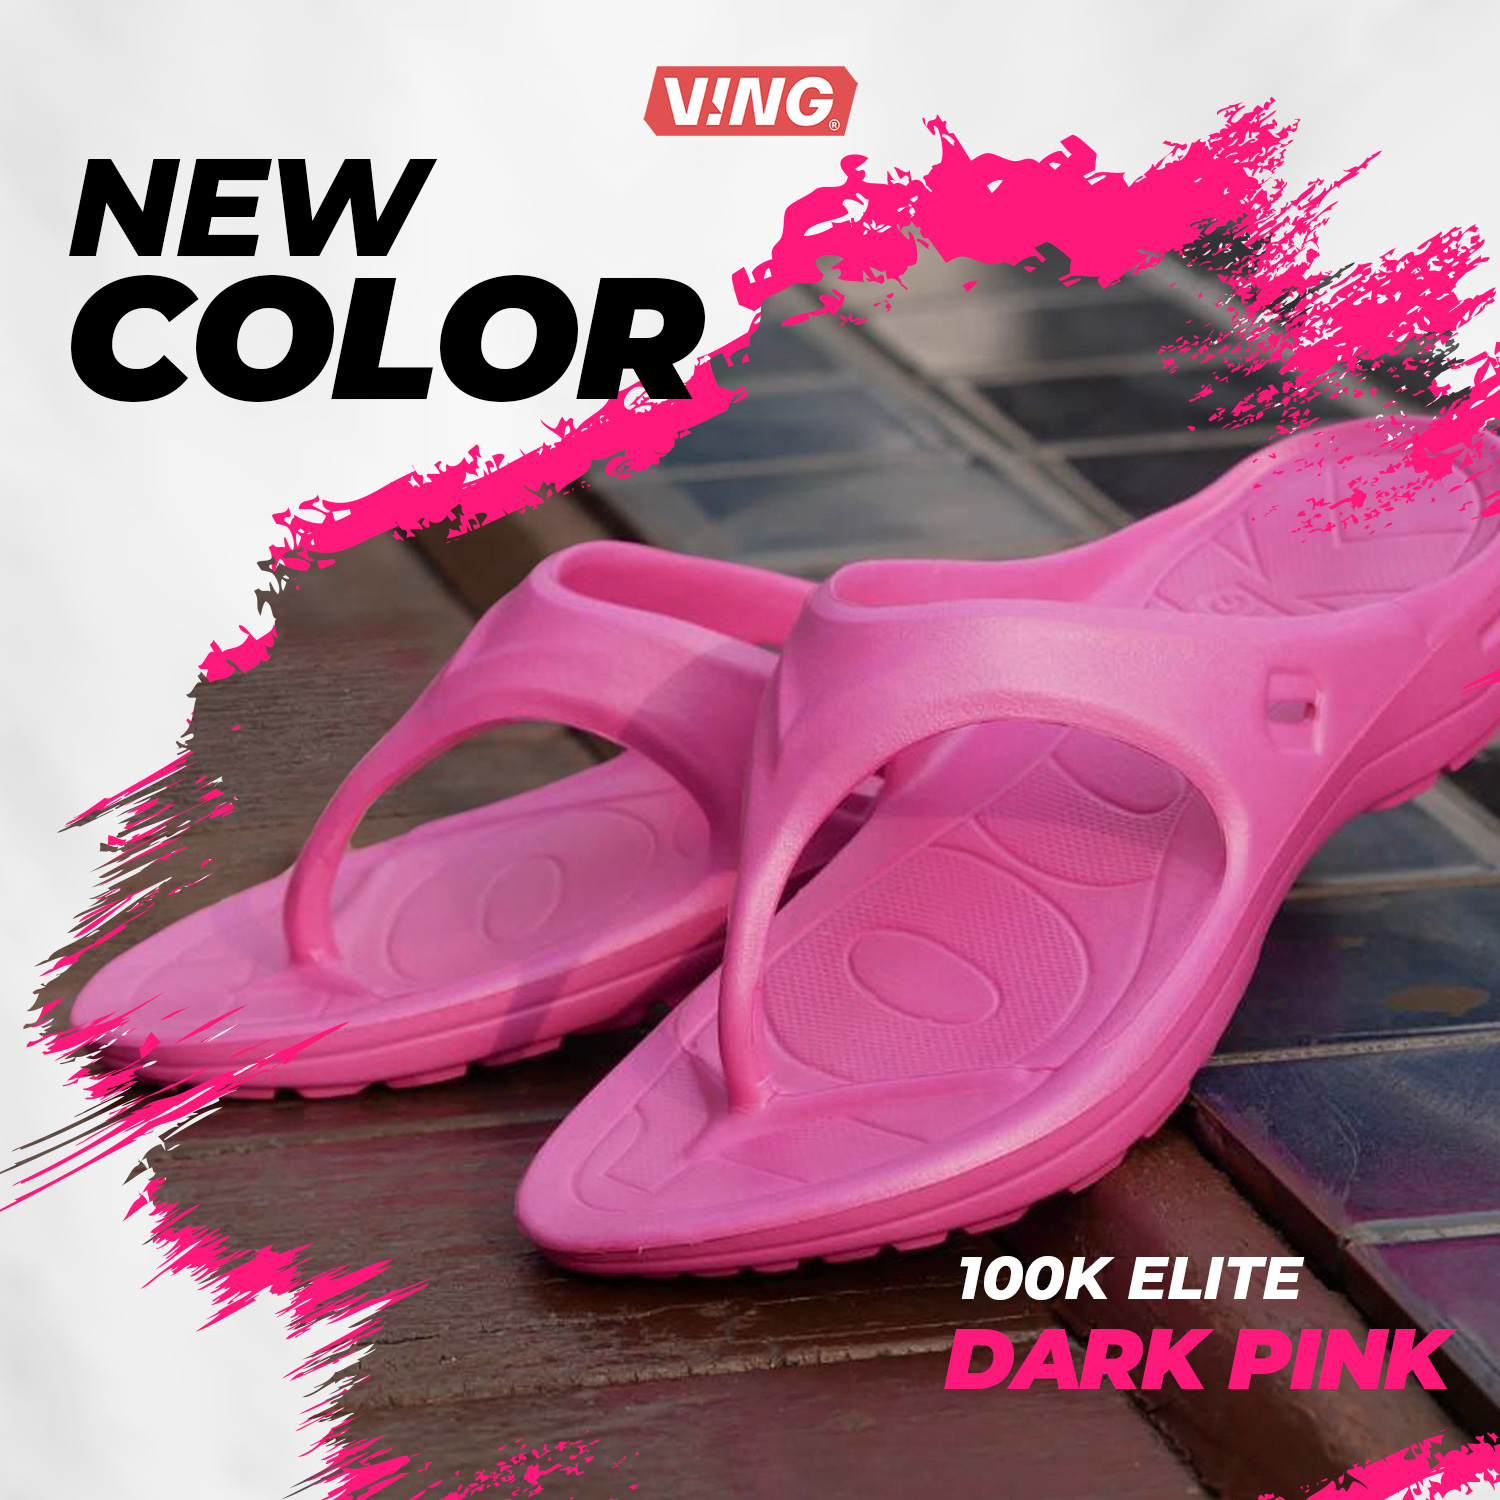 รองเท้าแตะวิ่งมาราธอน VING รุ่น 100K Elite - สีชมพู Dark Pink (รวมสายรัดข้อเท้า เลือกสีได้) Running Sandals - รองเท้าแตะสุขภาพ [ส่งฟรี]